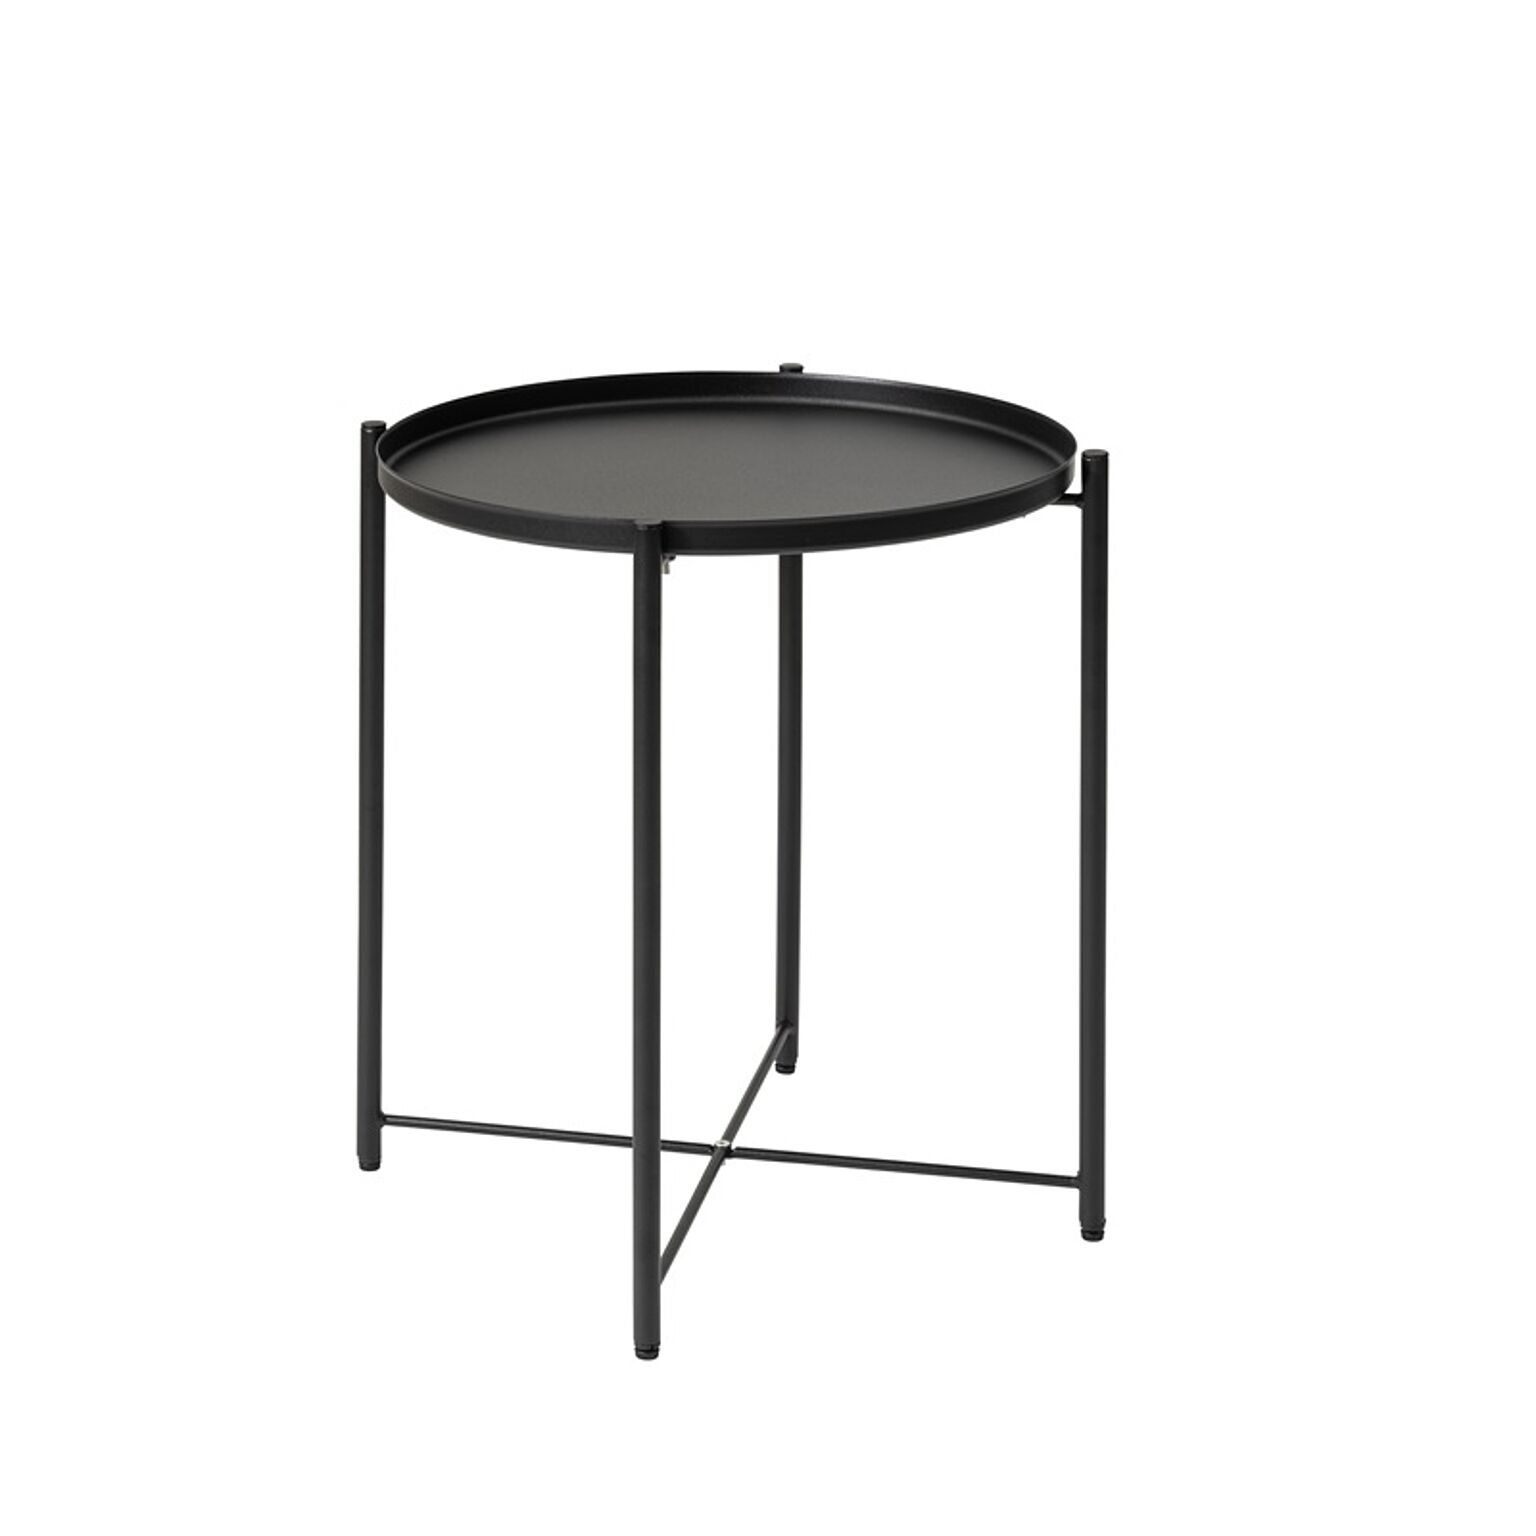 トレーテーブル W48×D48×H52 ブラック トレーテーブル トレイテーブル サイドテーブル ミニテーブル 取り外し可能 お盆 おしゃれ モダン シンプル 北欧 シャープ モノトーン ホワイト 